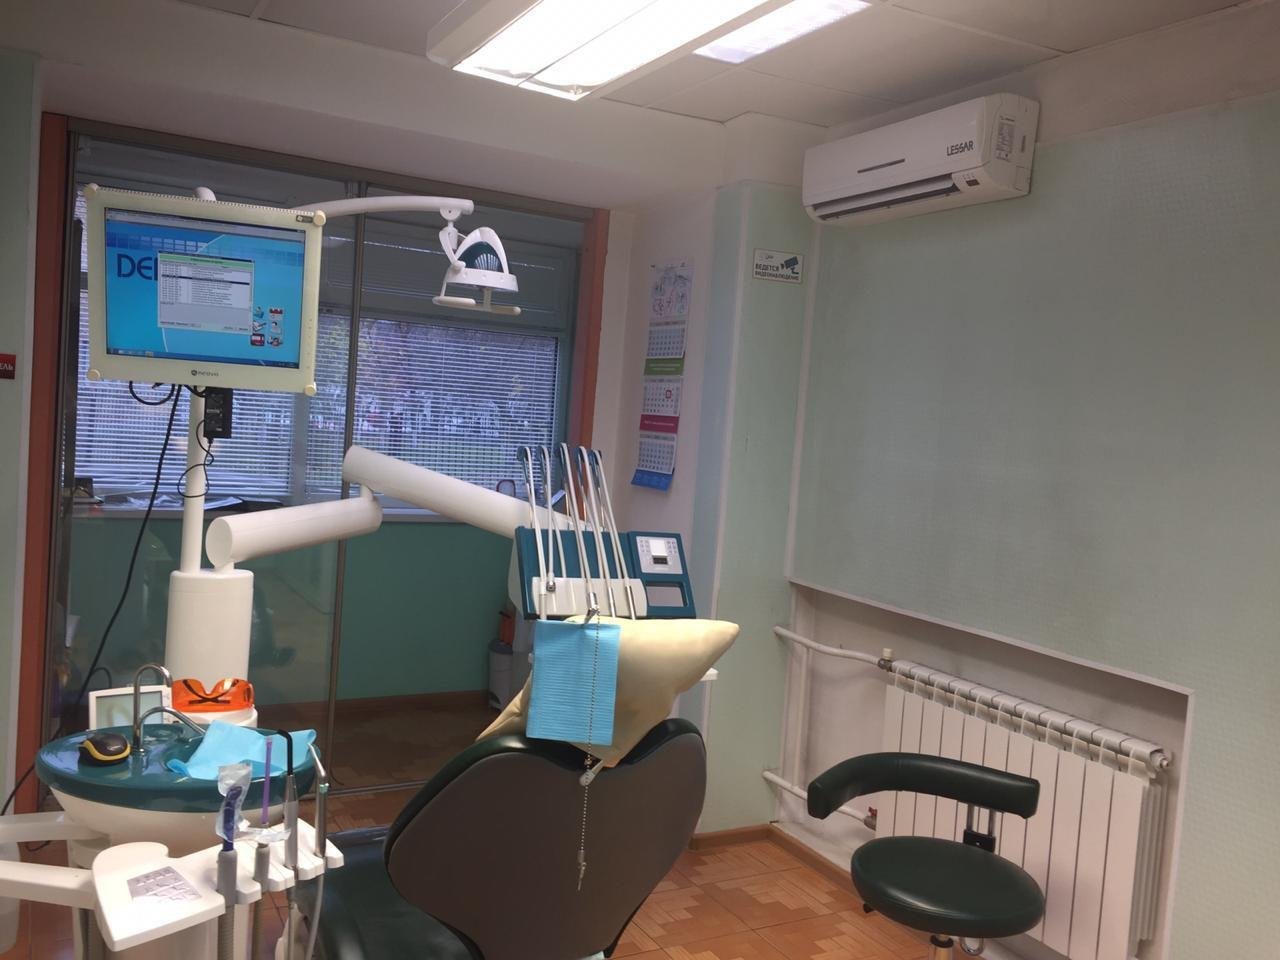 Доктор Дент - Найдите проверенную стоматологию Yull.ru